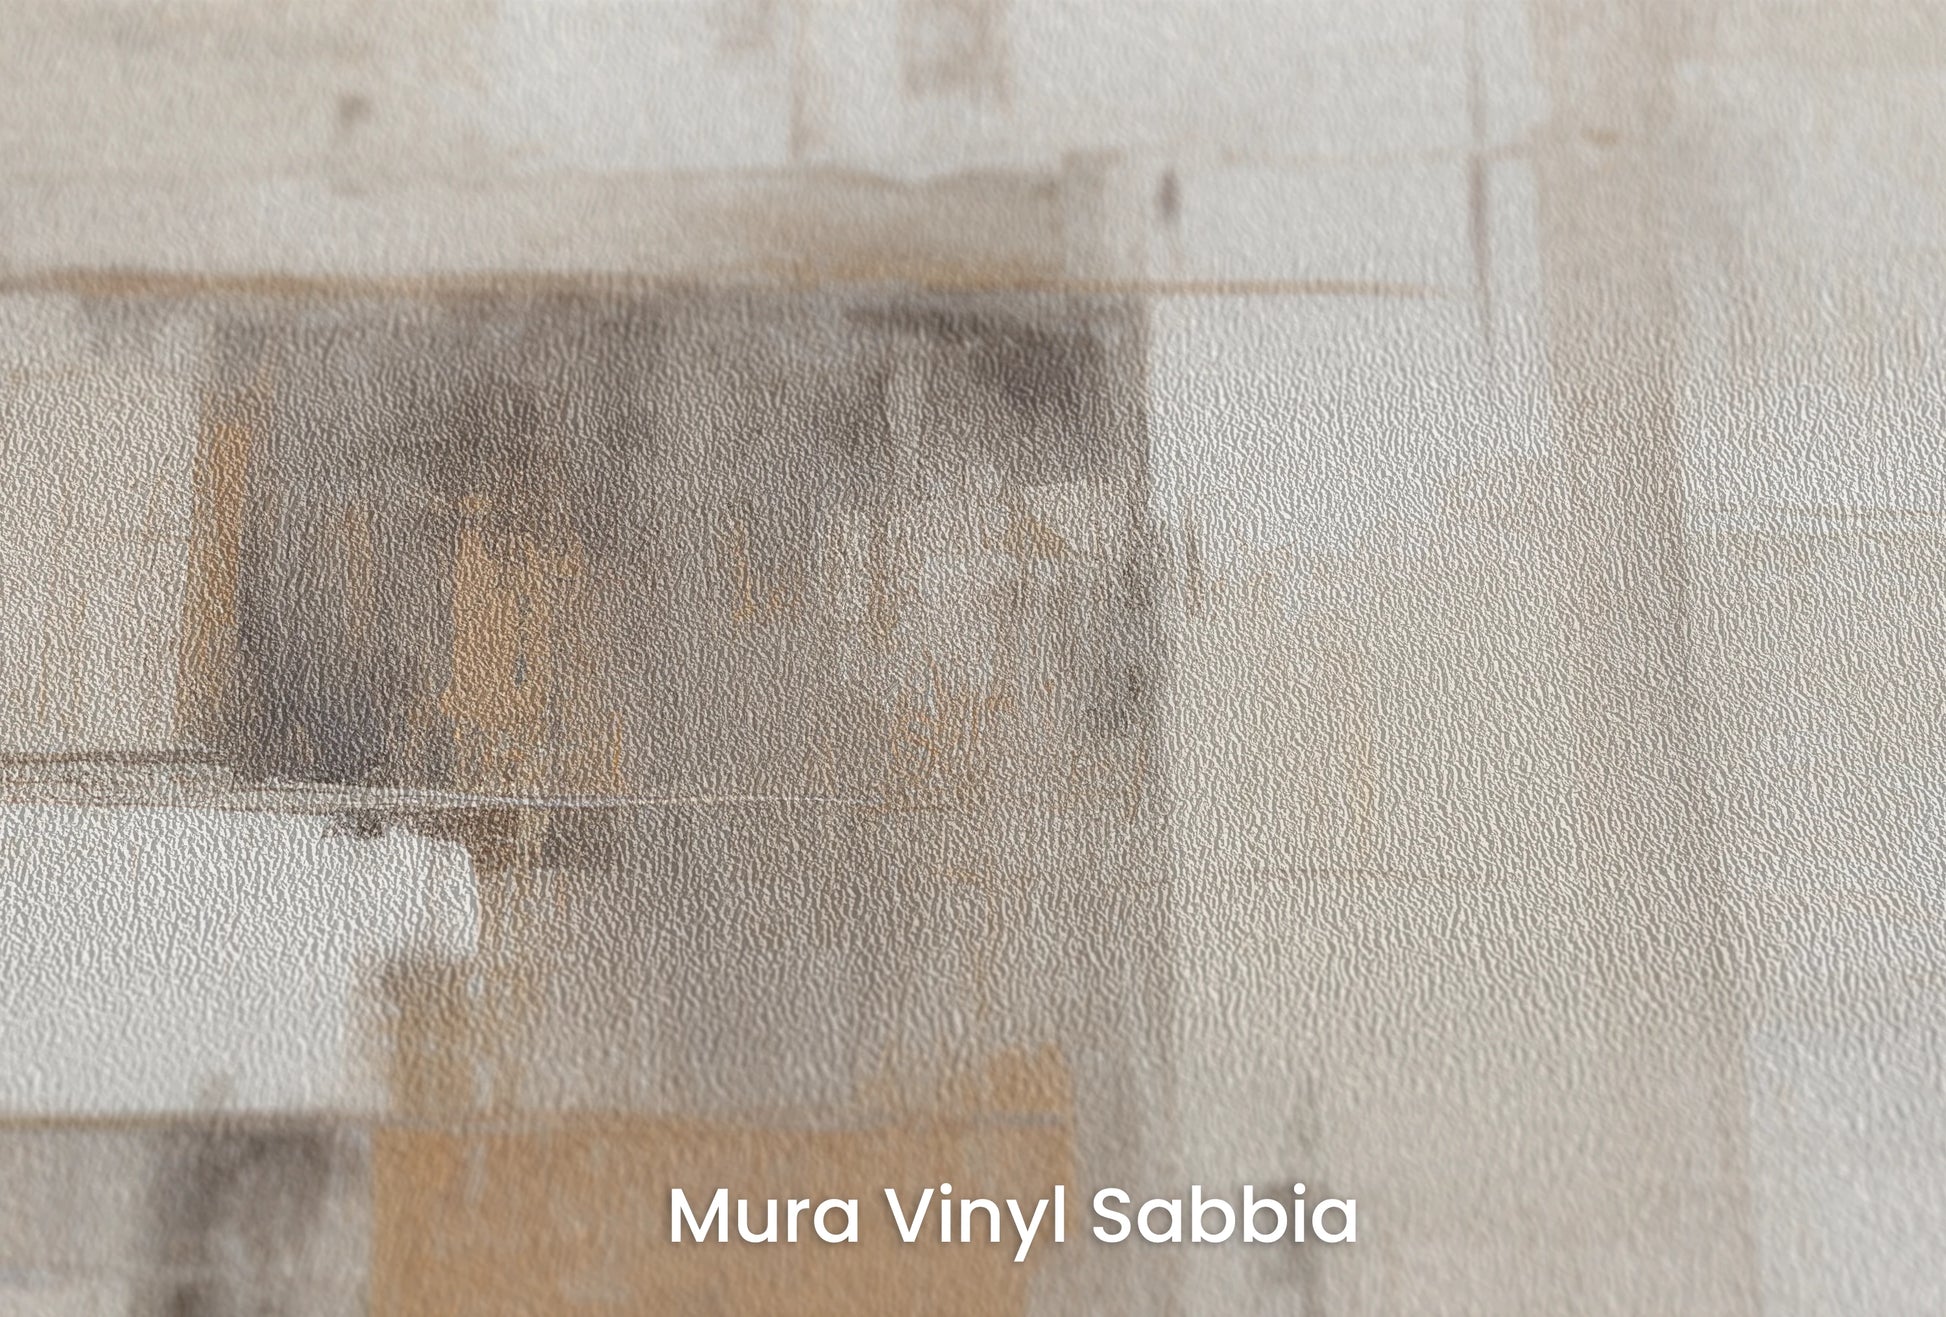 Zbliżenie na artystyczną fototapetę o nazwie Abstract Horizons na podłożu Mura Vinyl Sabbia struktura grubego ziarna piasku.